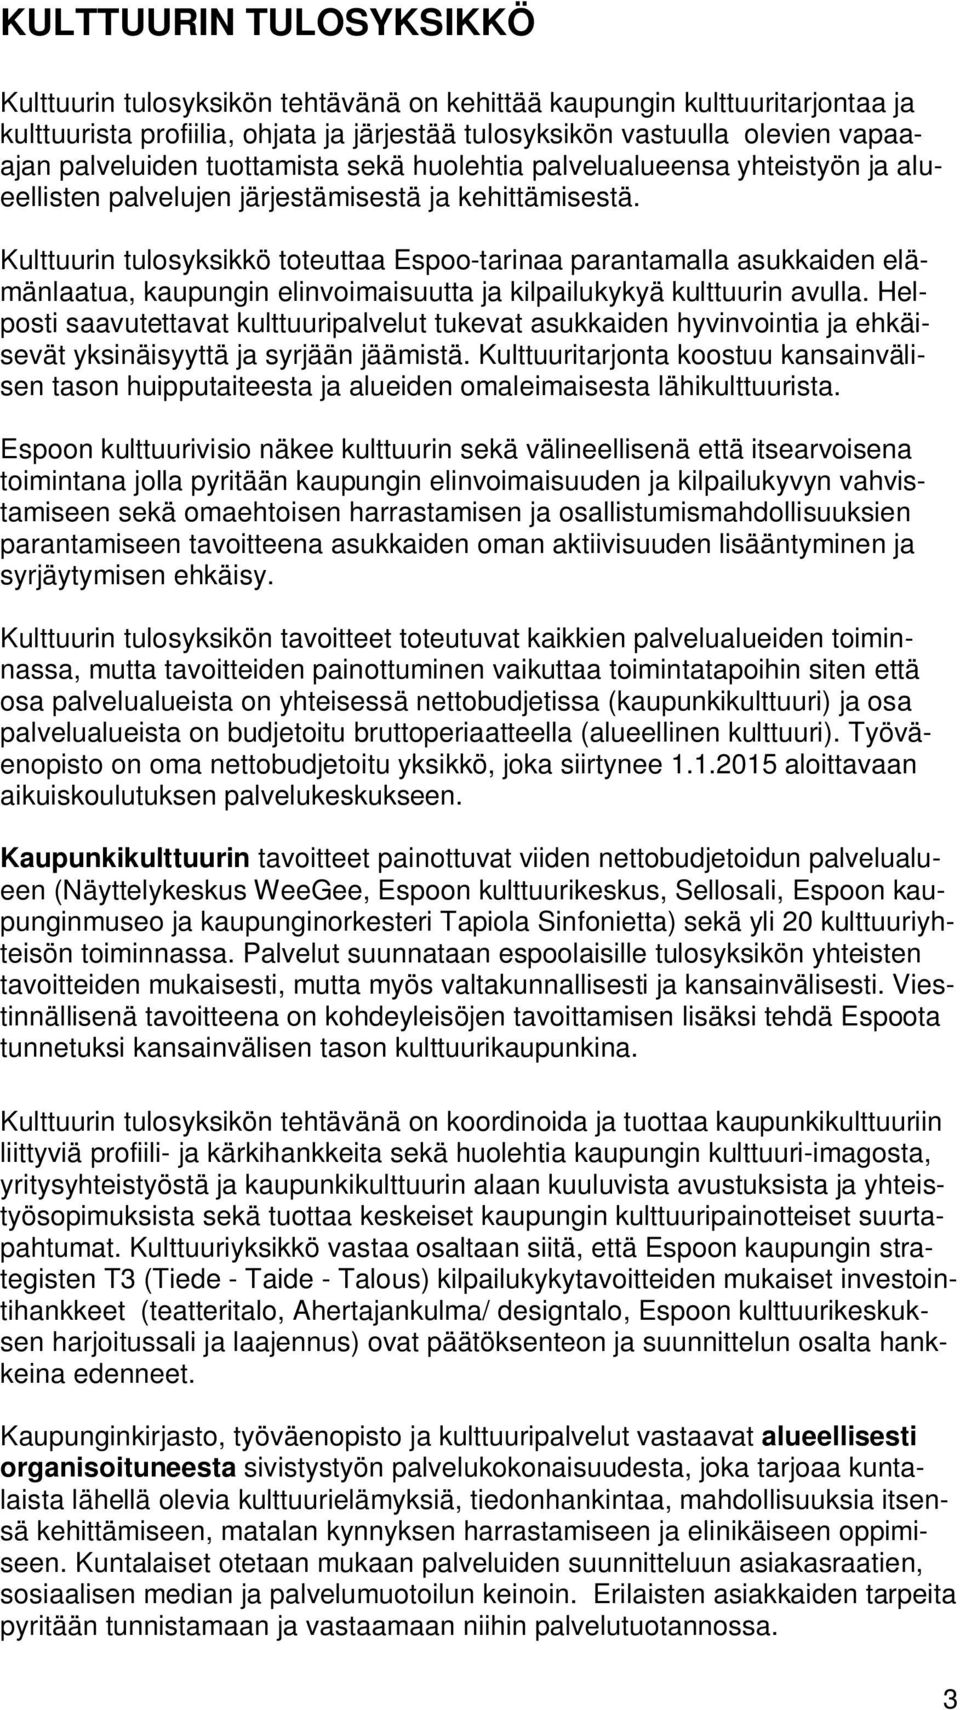 Kulttuurin tulosyksikkö toteuttaa Espoo-tarinaa parantamalla asukkaiden elämänlaatua, kaupungin elinvoimaisuutta ja kilpailukykyä kulttuurin avulla.